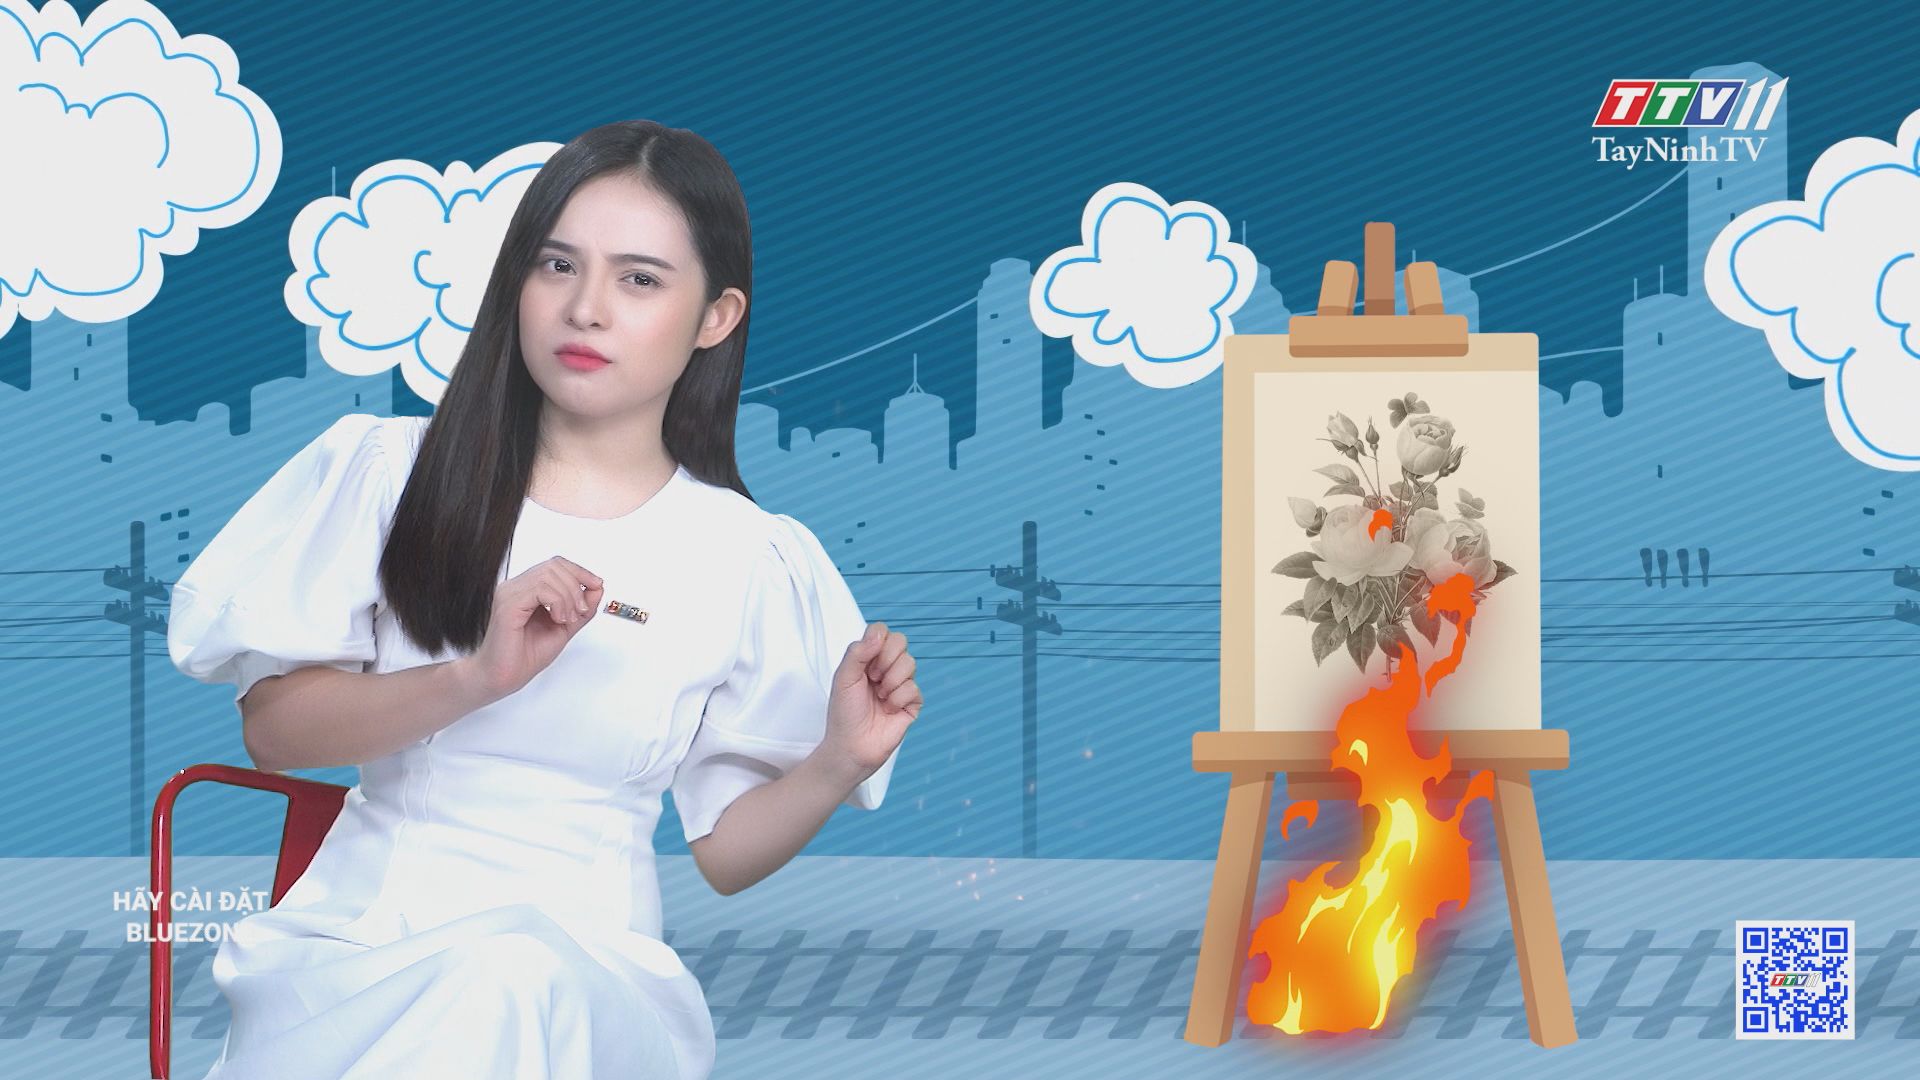 Sử dụng lửa để sáng tác nghệ thuật độc đáo | CHUYỆN ĐÔNG TÂY KỲ THÚ | TayNinhTV 